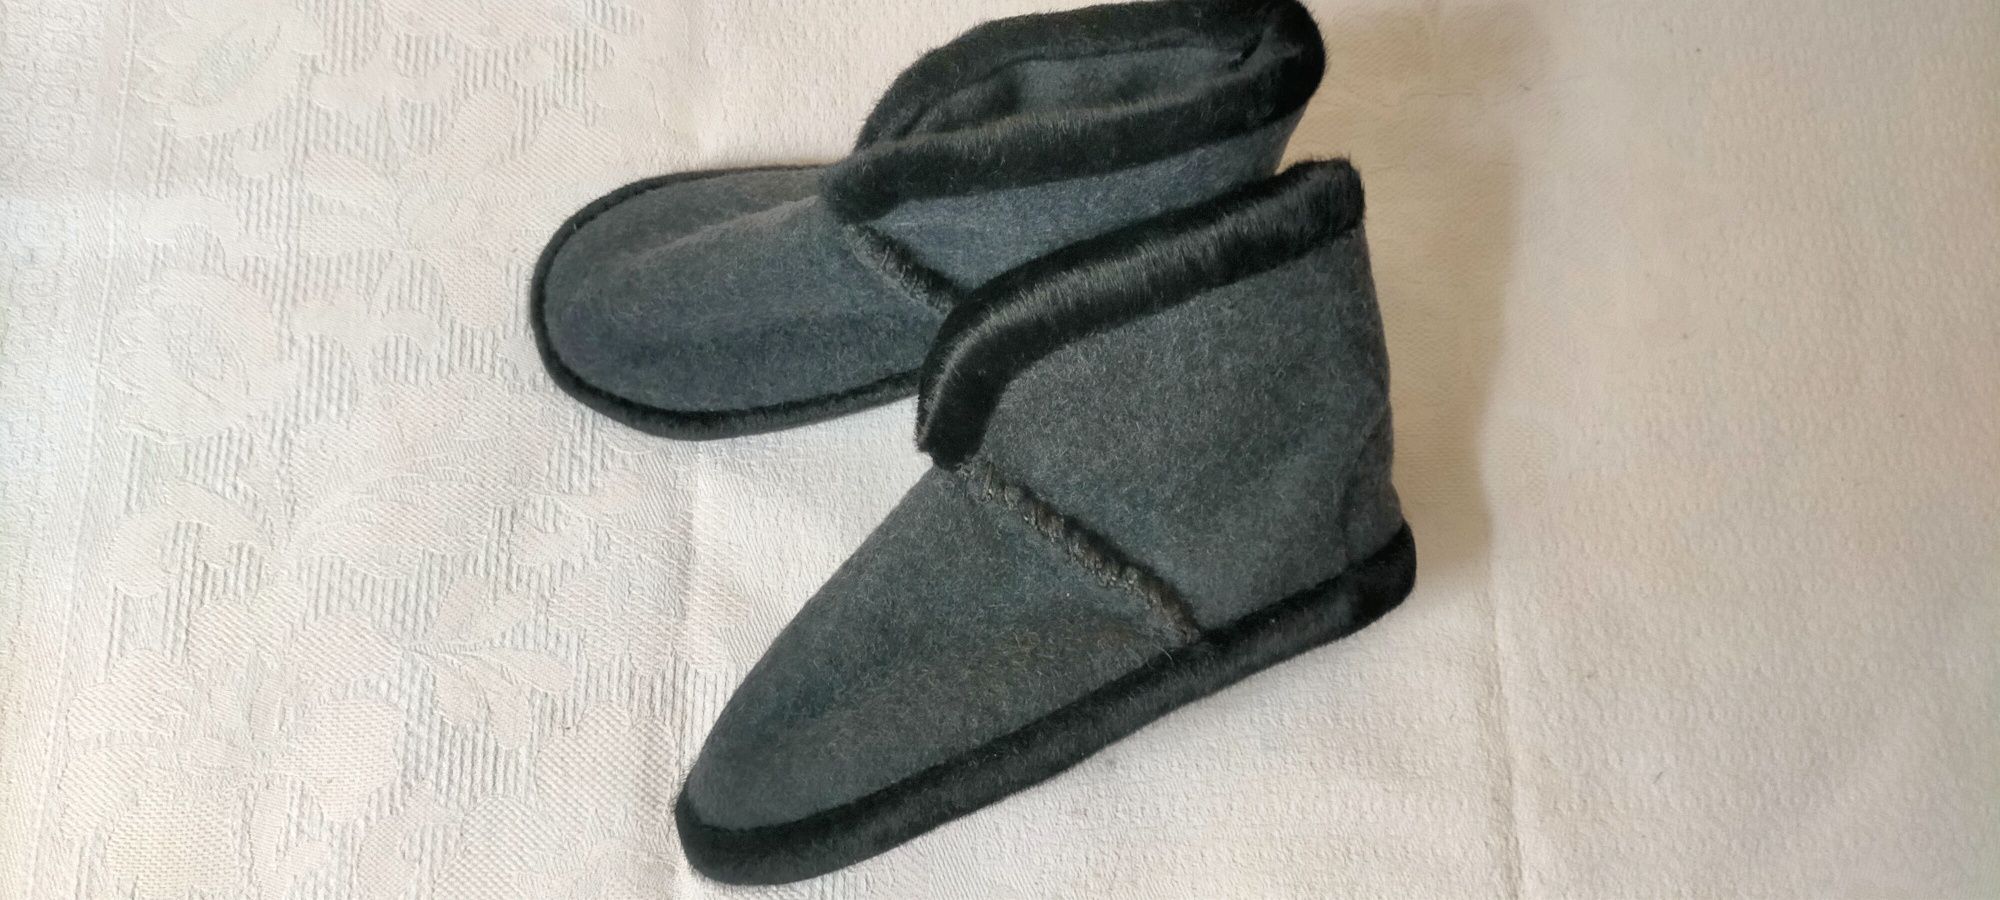 Продается тёплая обувь (тапочки) для дома